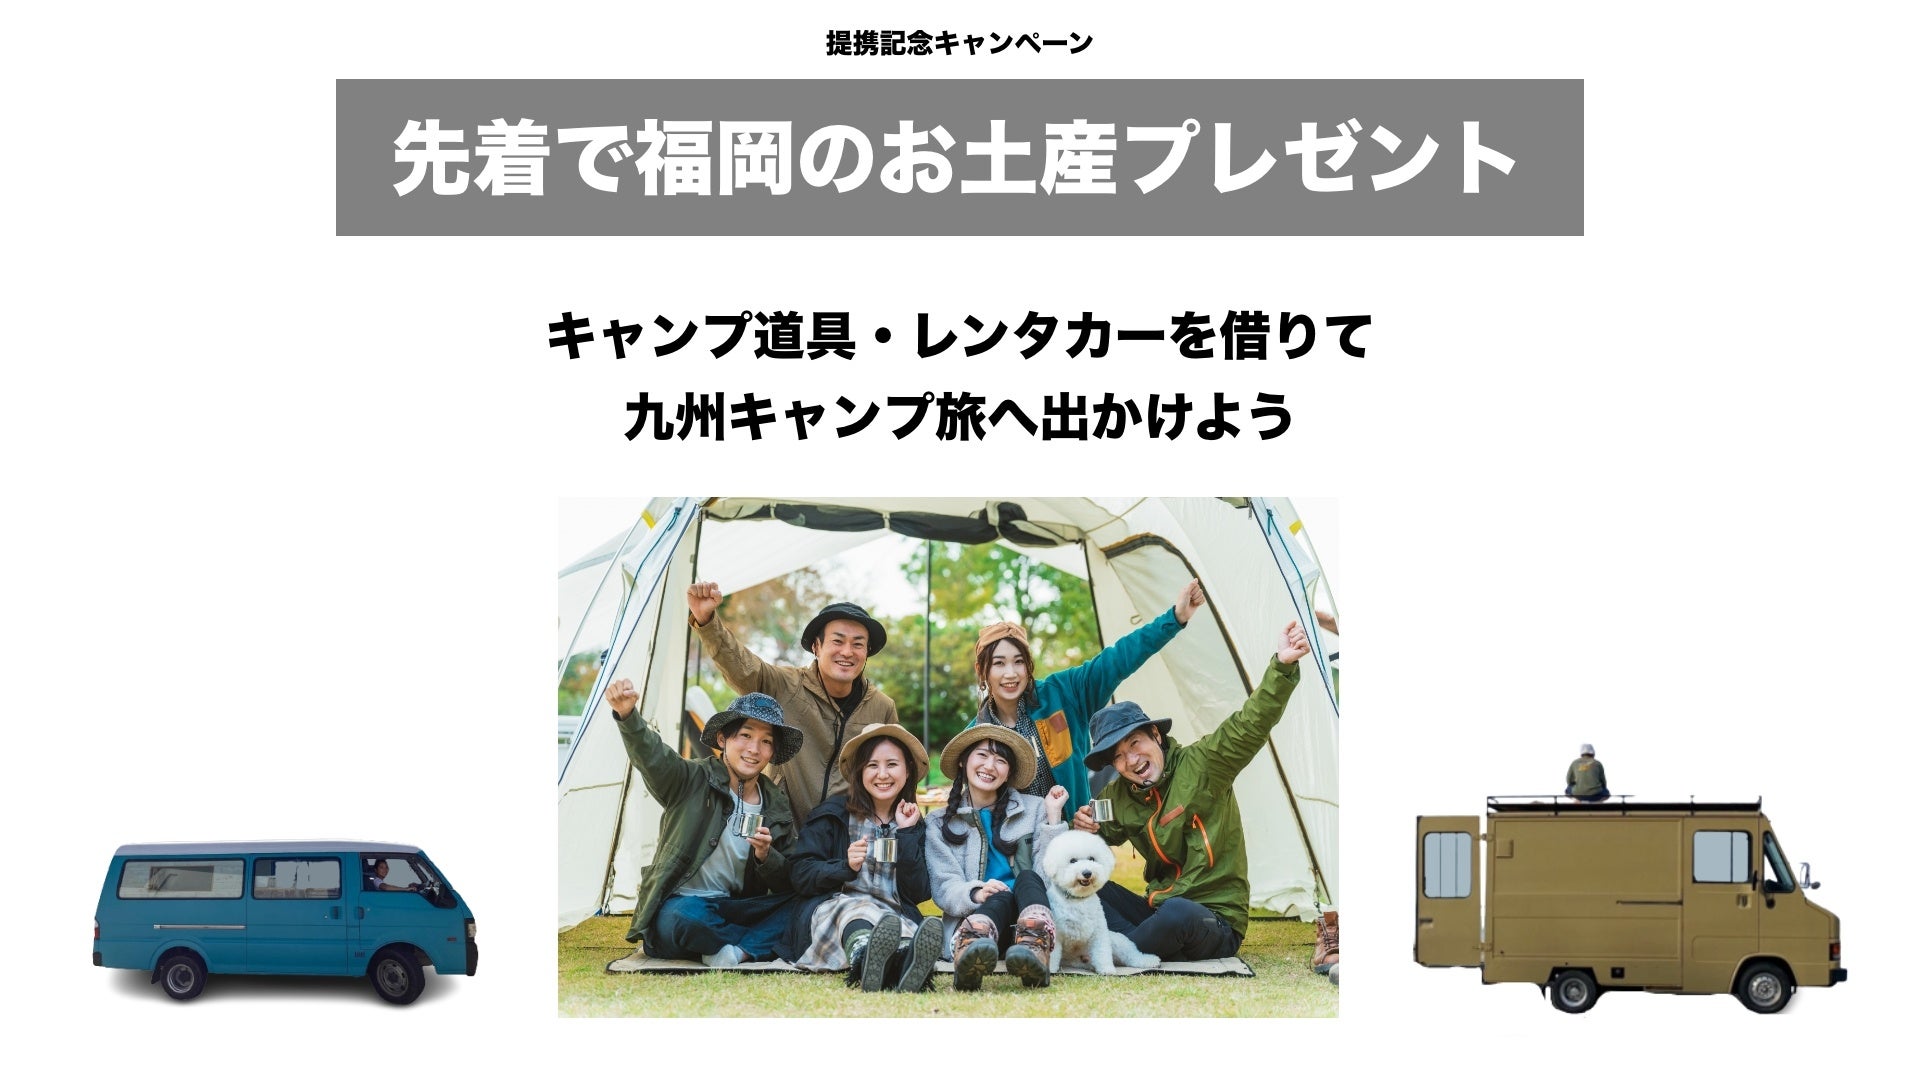 キャンプ道具の無人レンタルサービス「​福岡キャンプレンタル」と福岡・五島でのカスタムバンのレンタルを行う「OSOTO campervan」が業務提携のサブ画像4_九州旅キャンペーン